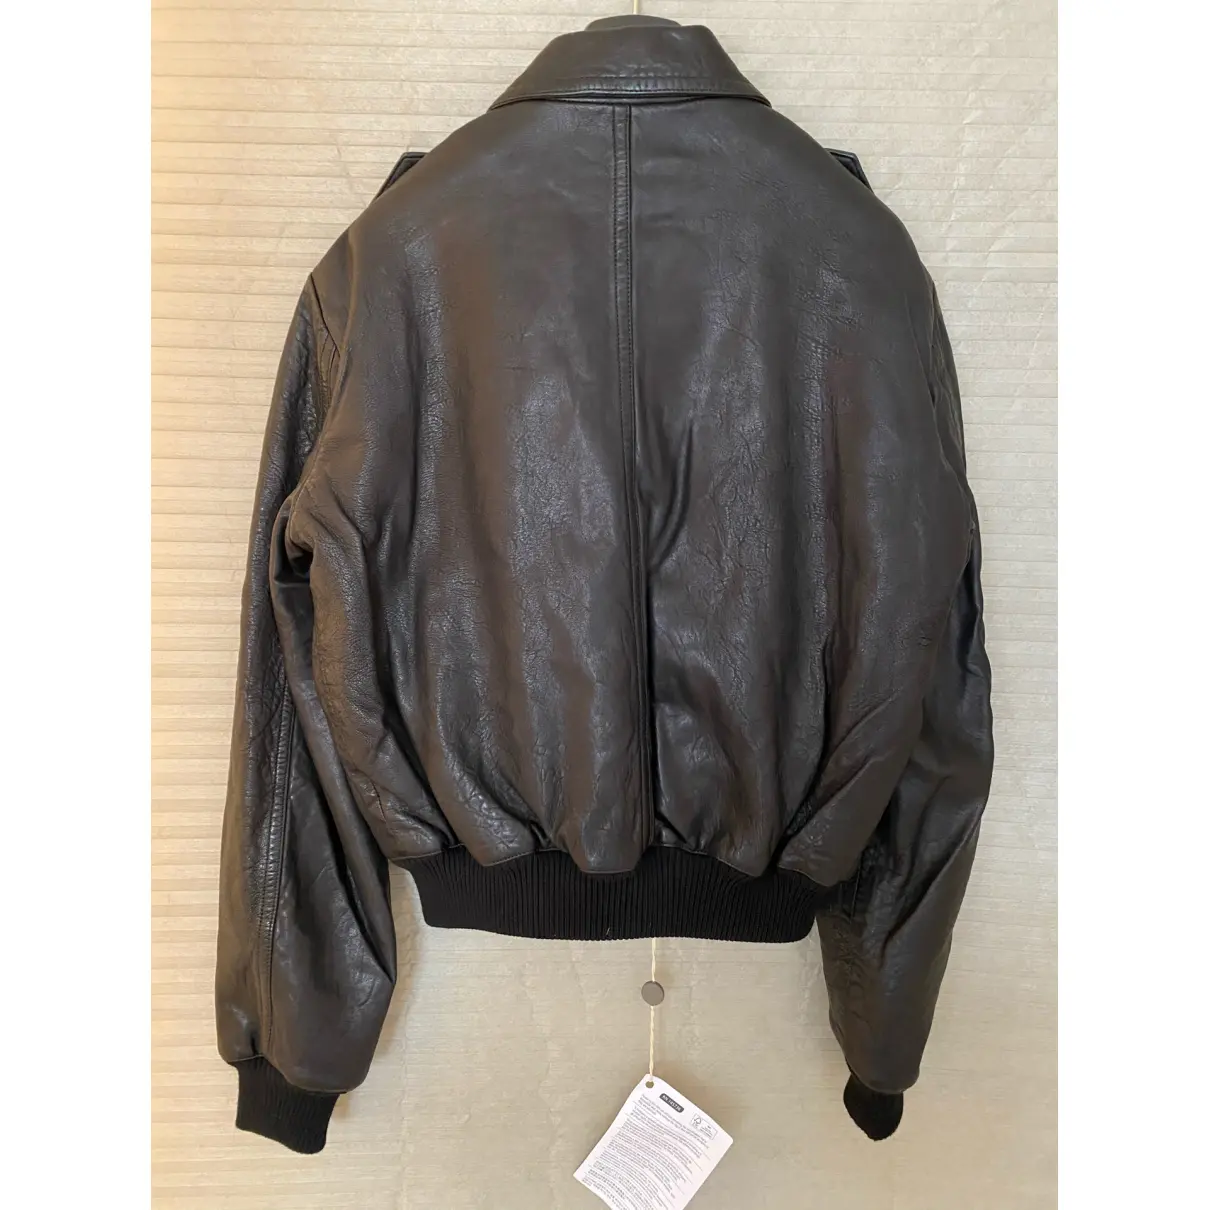 Buy Isabel Marant Etoile Leather jacket online